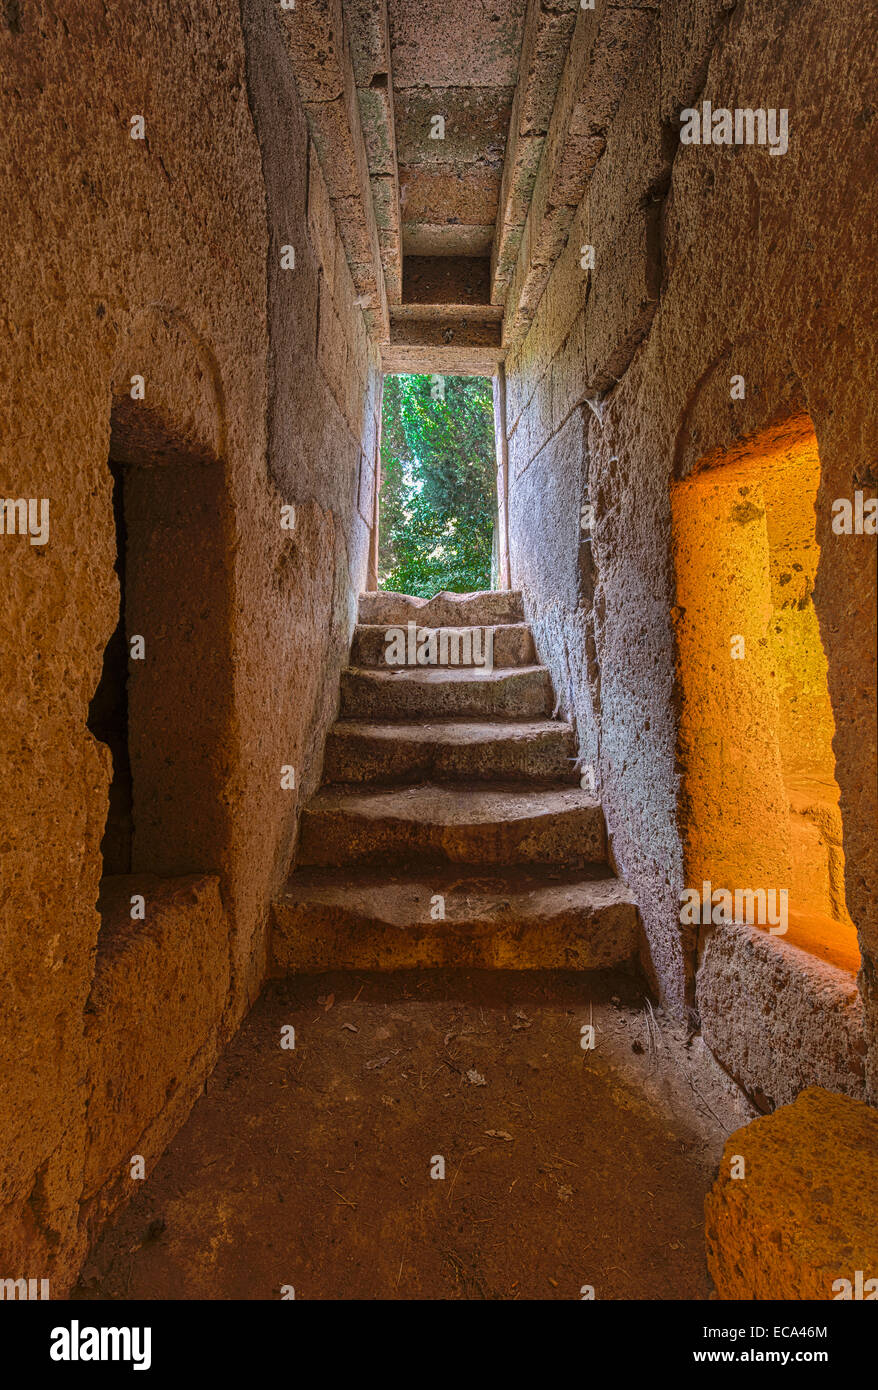 Entrance tunnel to grave chamber, tomba, tumulus mound grave, Etruscan Necropolis, necropolis Banditaccia Stock Photo